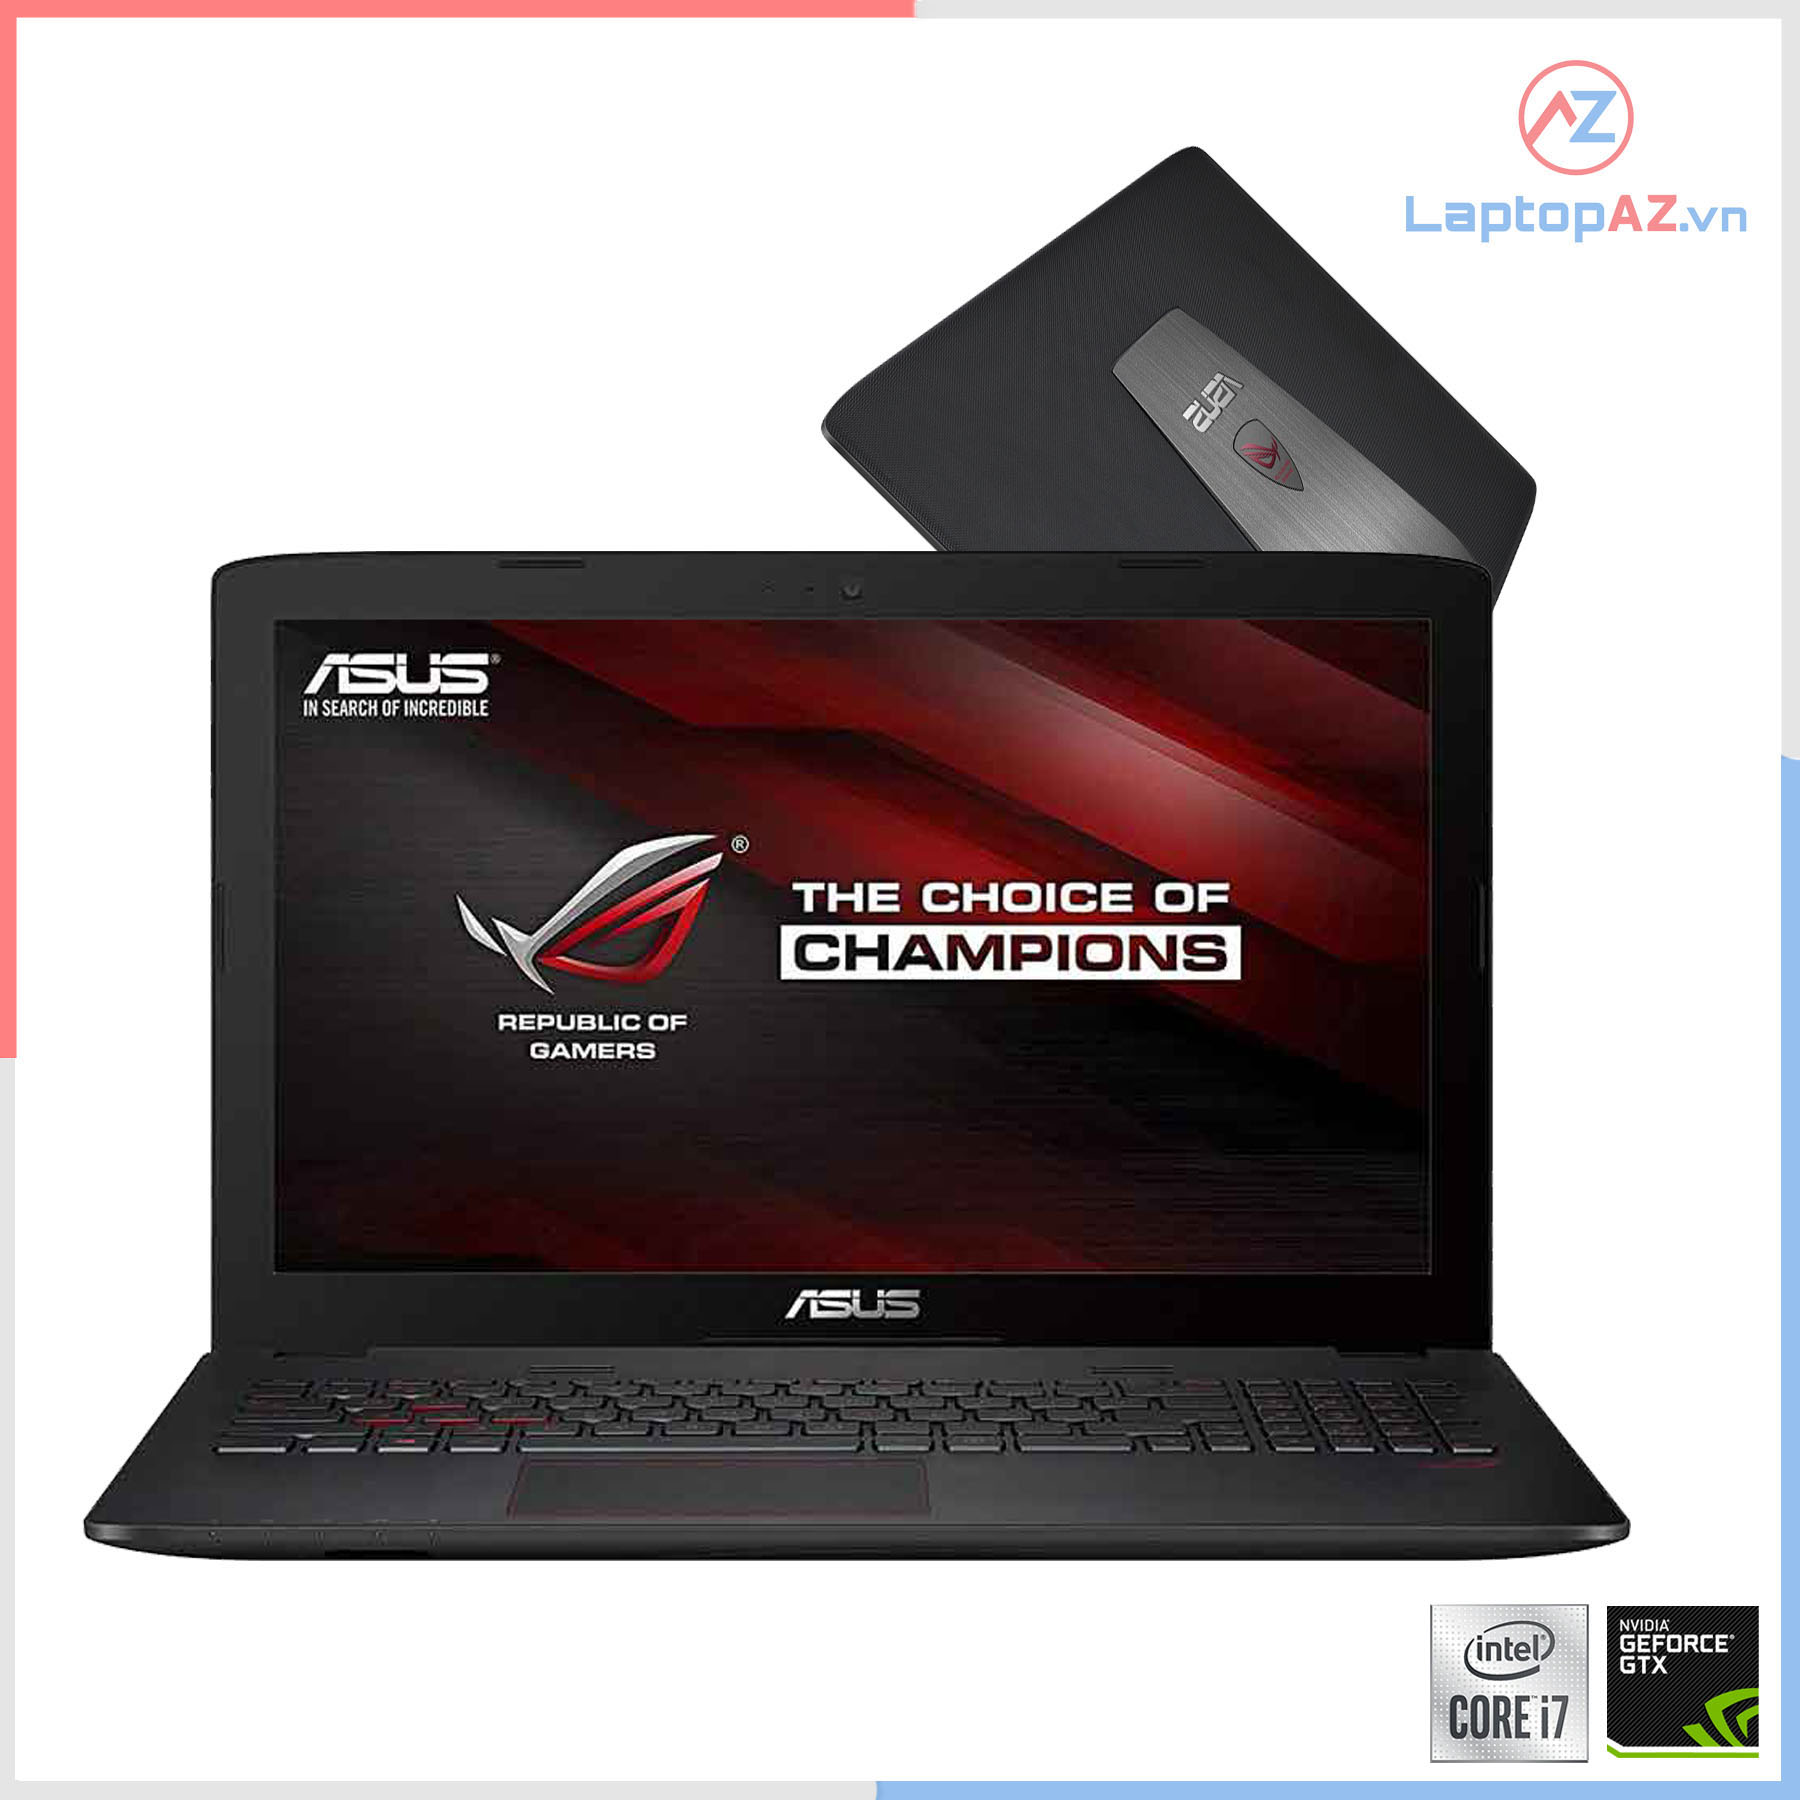 Laptop Asus GL552VX-DM070D (Core i7-6700HQ, 8GB, 1TB, VGA 4GB, NVIDIA GTX 950M, 15.6 inch, FHD)